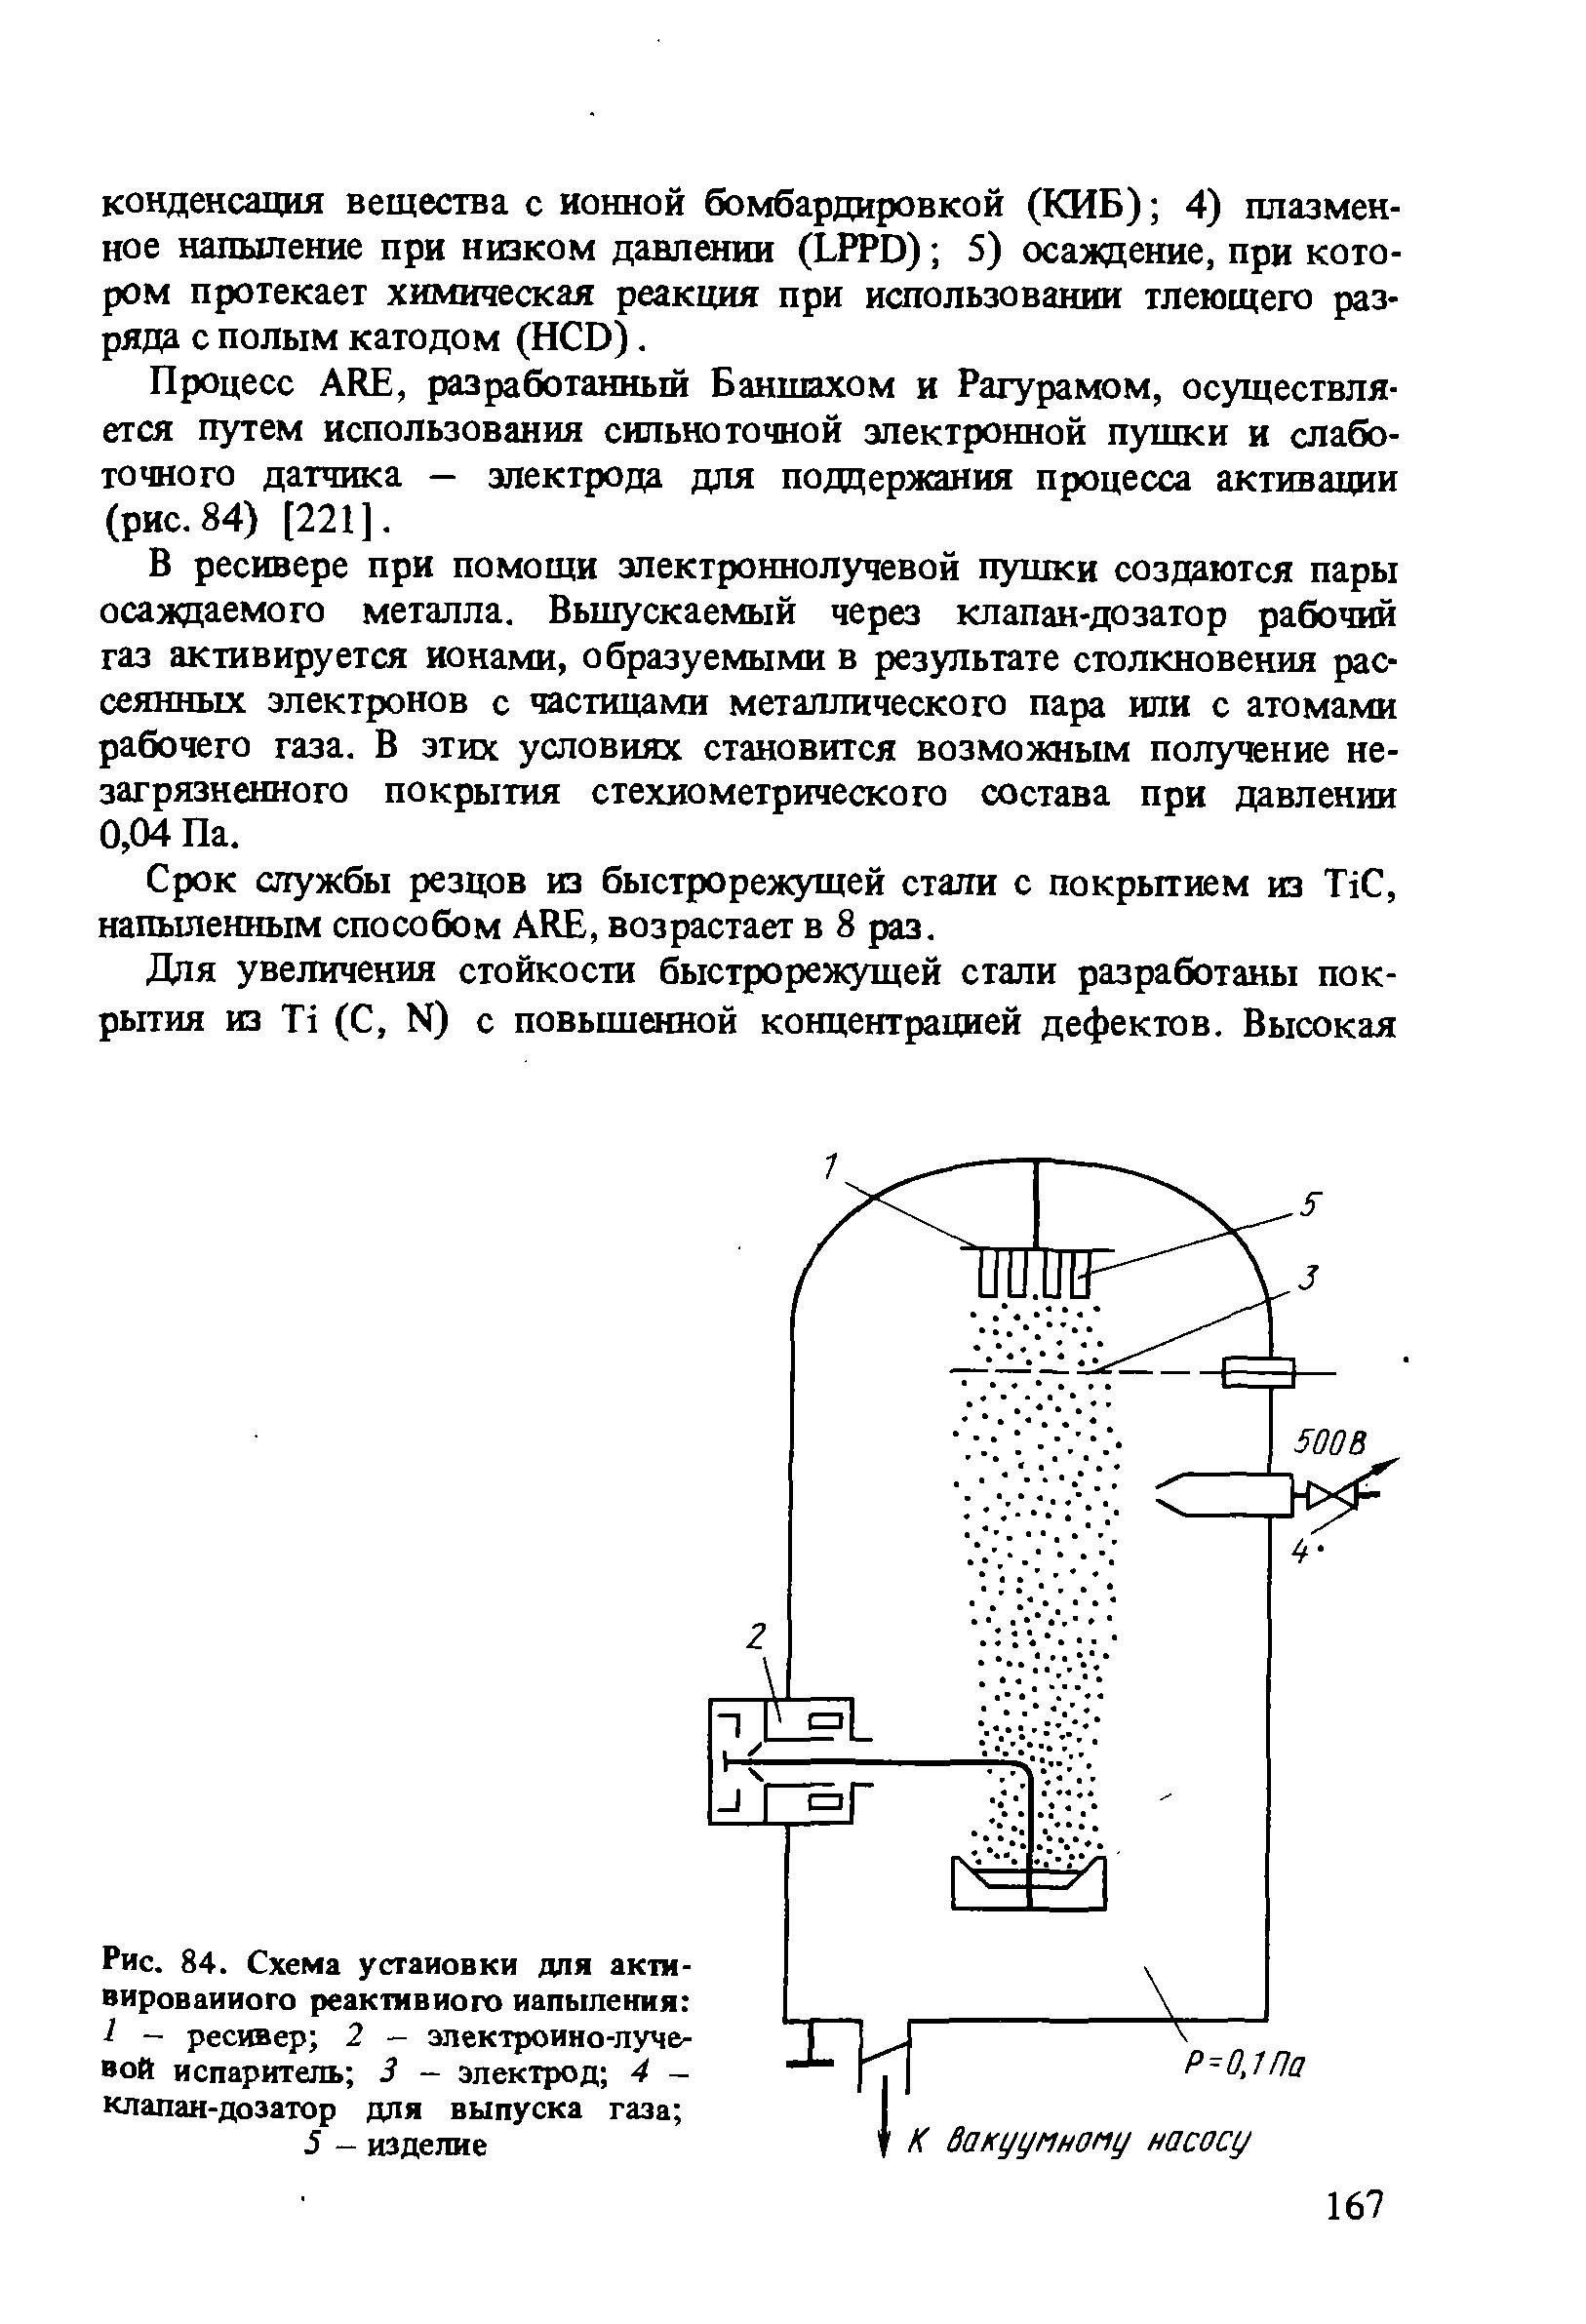 Рис. 84. Схема установки для актм-вироваииого реактивного напыления 1 - ресивер 2 - <a href="/info/178439">электронно-лучевой испаритель</a> 3 - электрод 4 -клапан-дозатор для выпуска газа 
